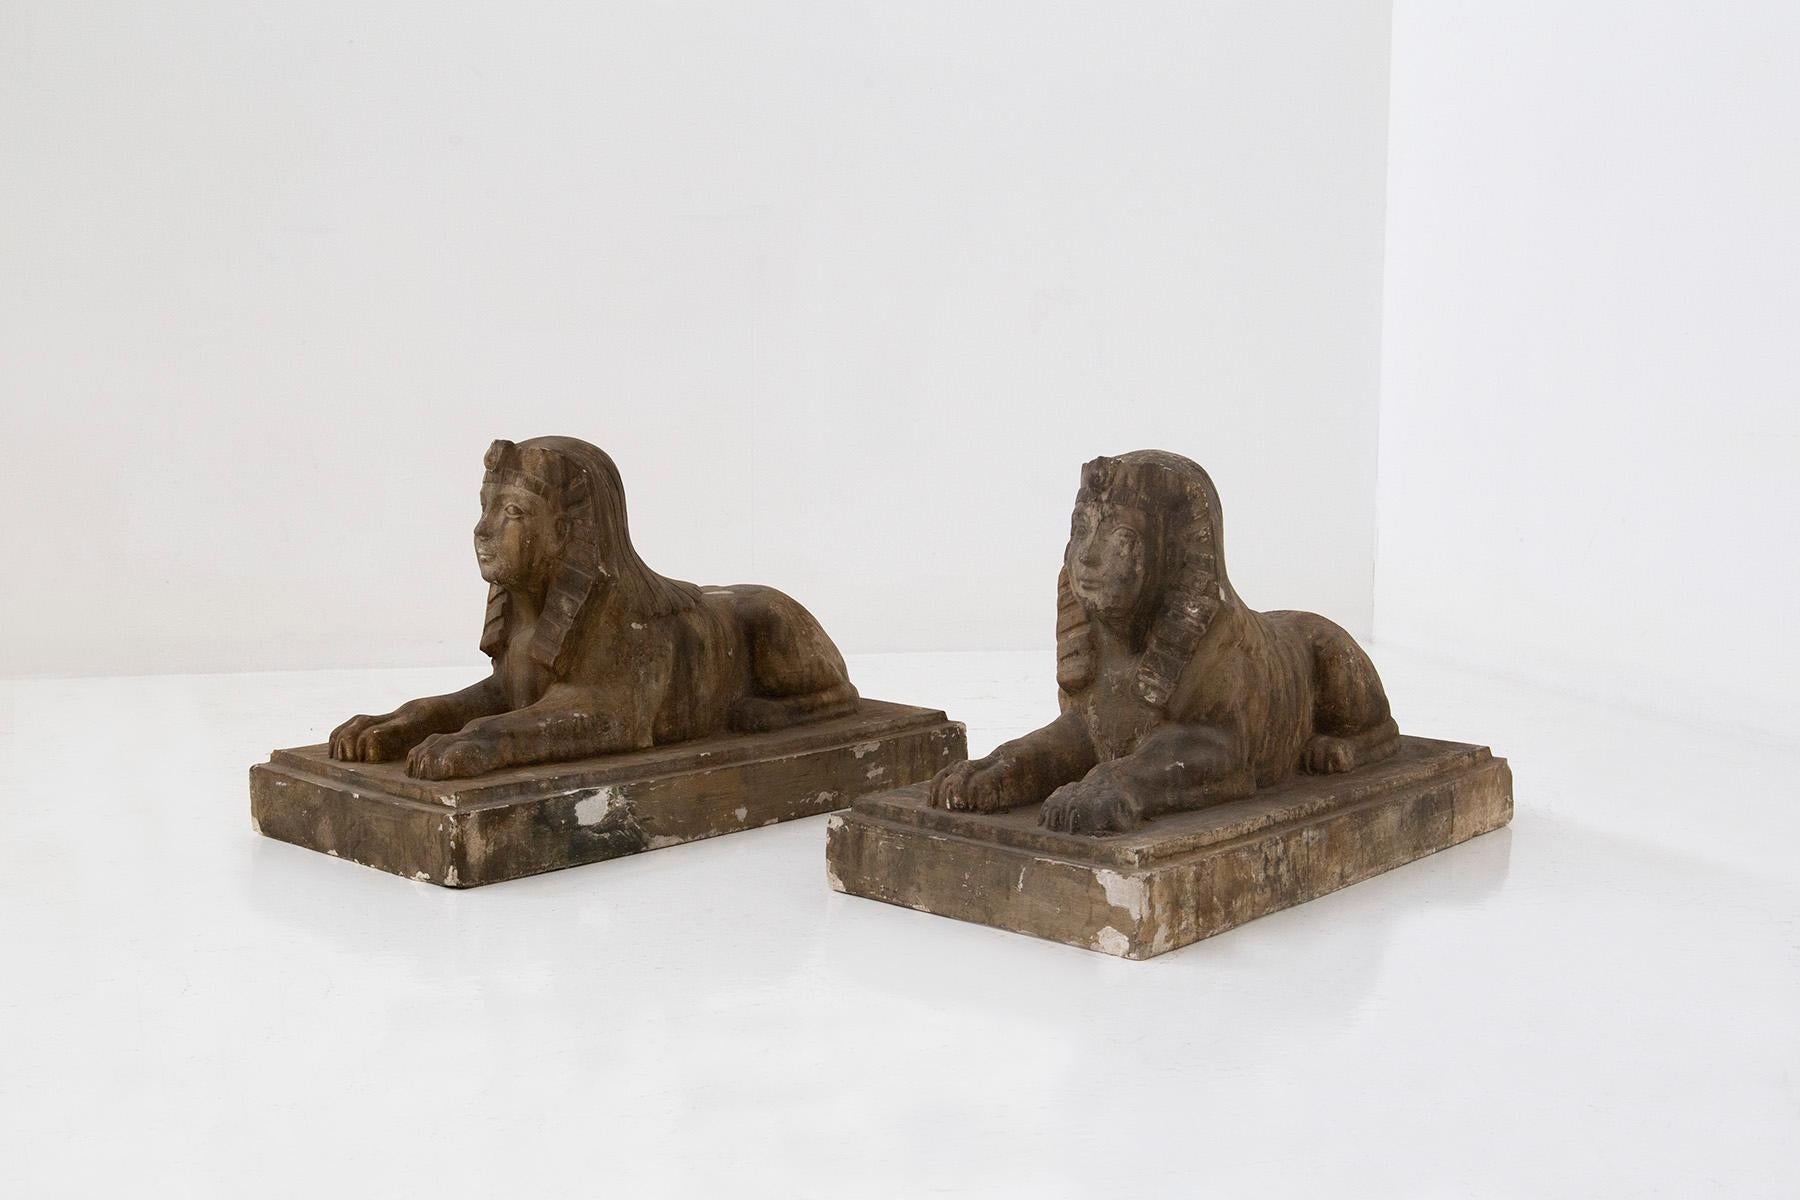 Entdecken Sie den Inbegriff von Eleganz mit diesem exquisiten Paar ägyptischer Sphinx-Statuen. Die mit viel Liebe zum Detail gefertigten Skulpturen bestehen aus Scaiola-Gips und sind mit einer faszinierenden Goldverzierung versehen. Diese aus dem